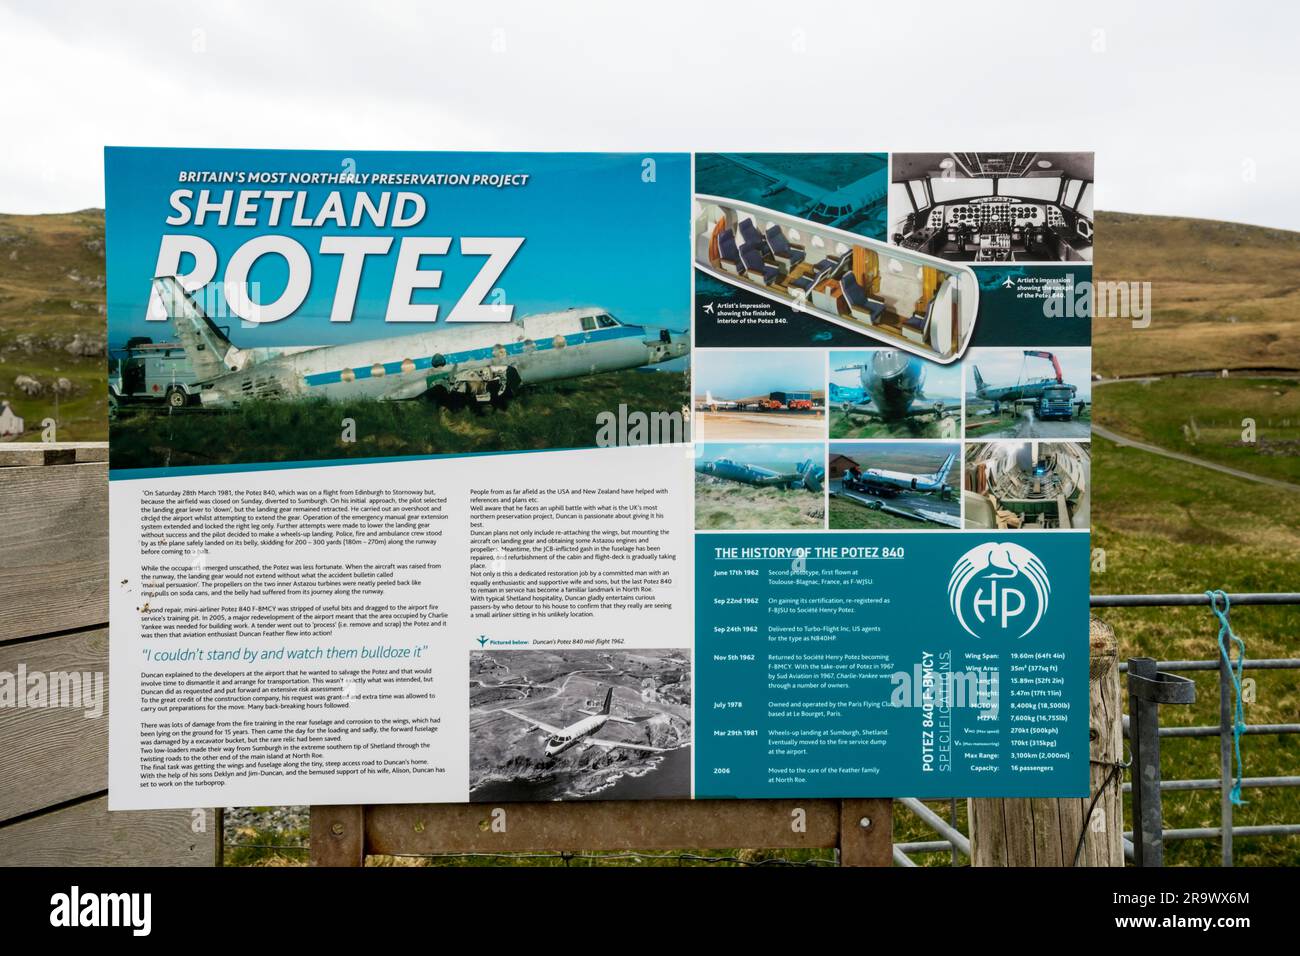 Panneau d'interprétation avec informations touristiques sur le fuselage de l'avion Potez 840 dans le jardin d'une maison à North Roe, Shetland. Banque D'Images